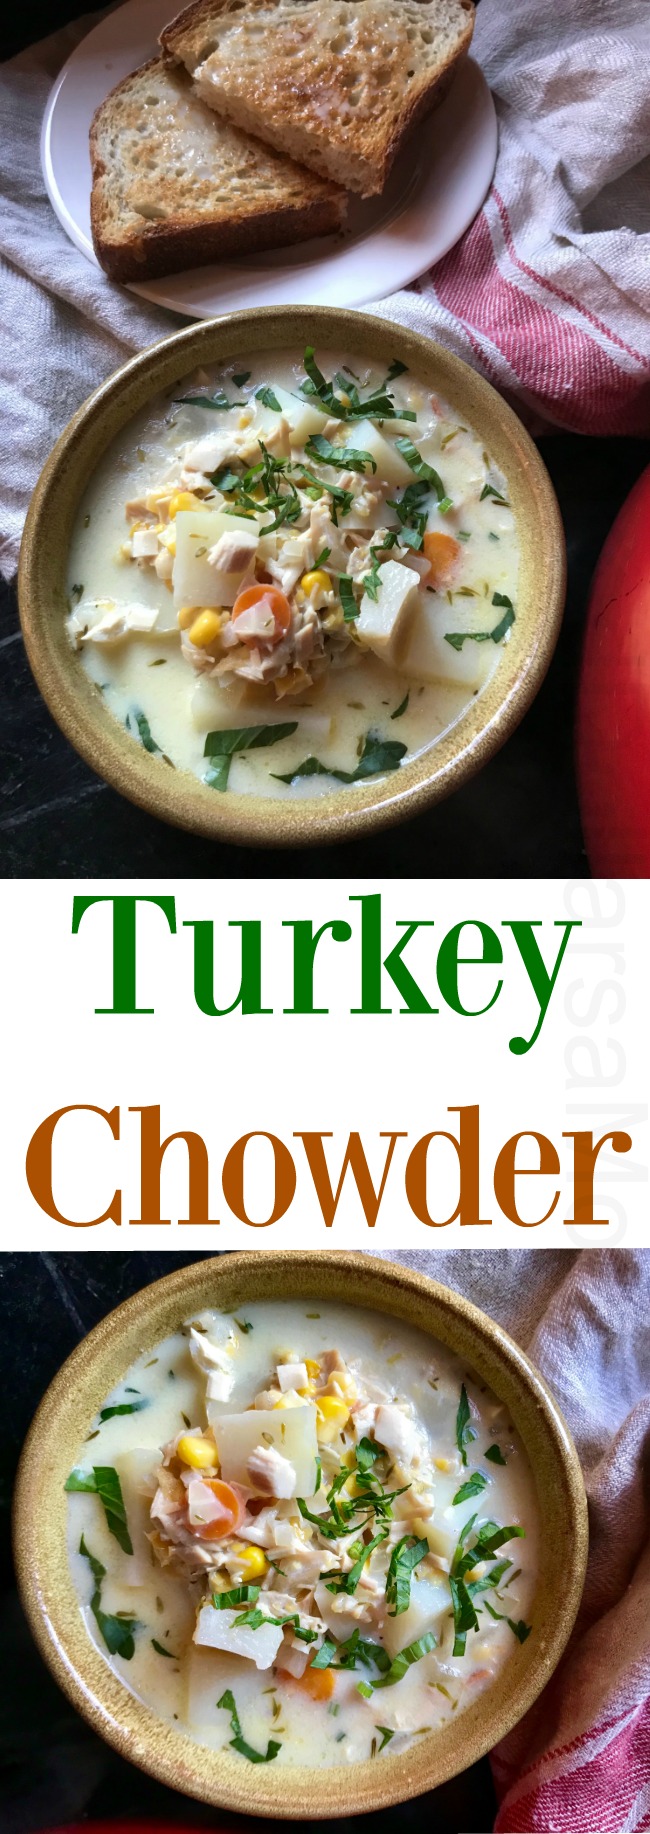 Turkey Chowder Recipe